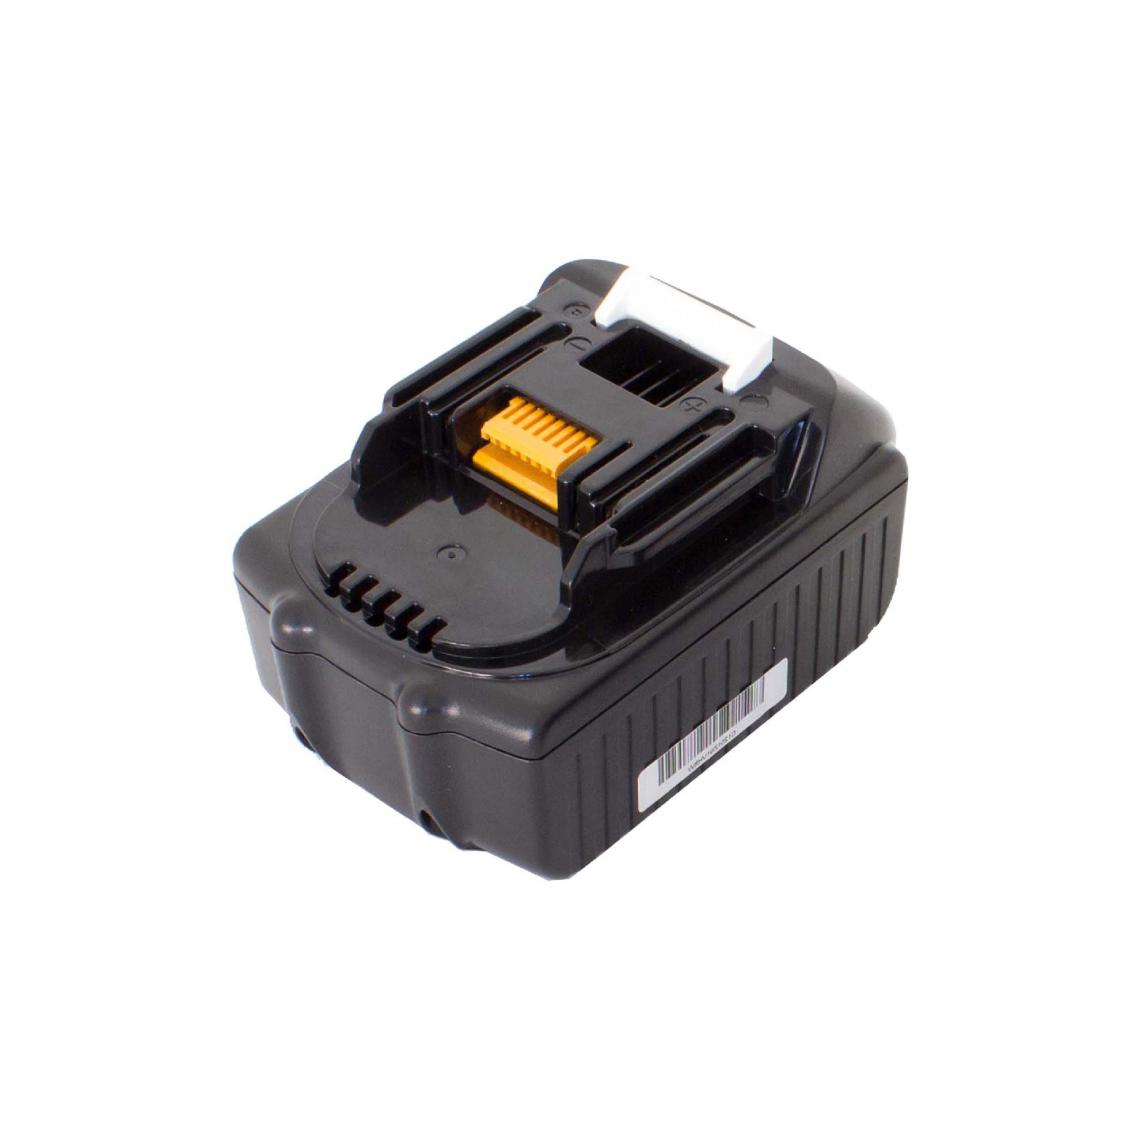 Vhbw - vhbw Batterie compatible avec Makita TM50DRF, TP140DRFX, TP141DRFX, TP141DZ, TW251D outil électrique (1500 mAh, Li-ion, 18 V) - Accessoires vissage, perçage